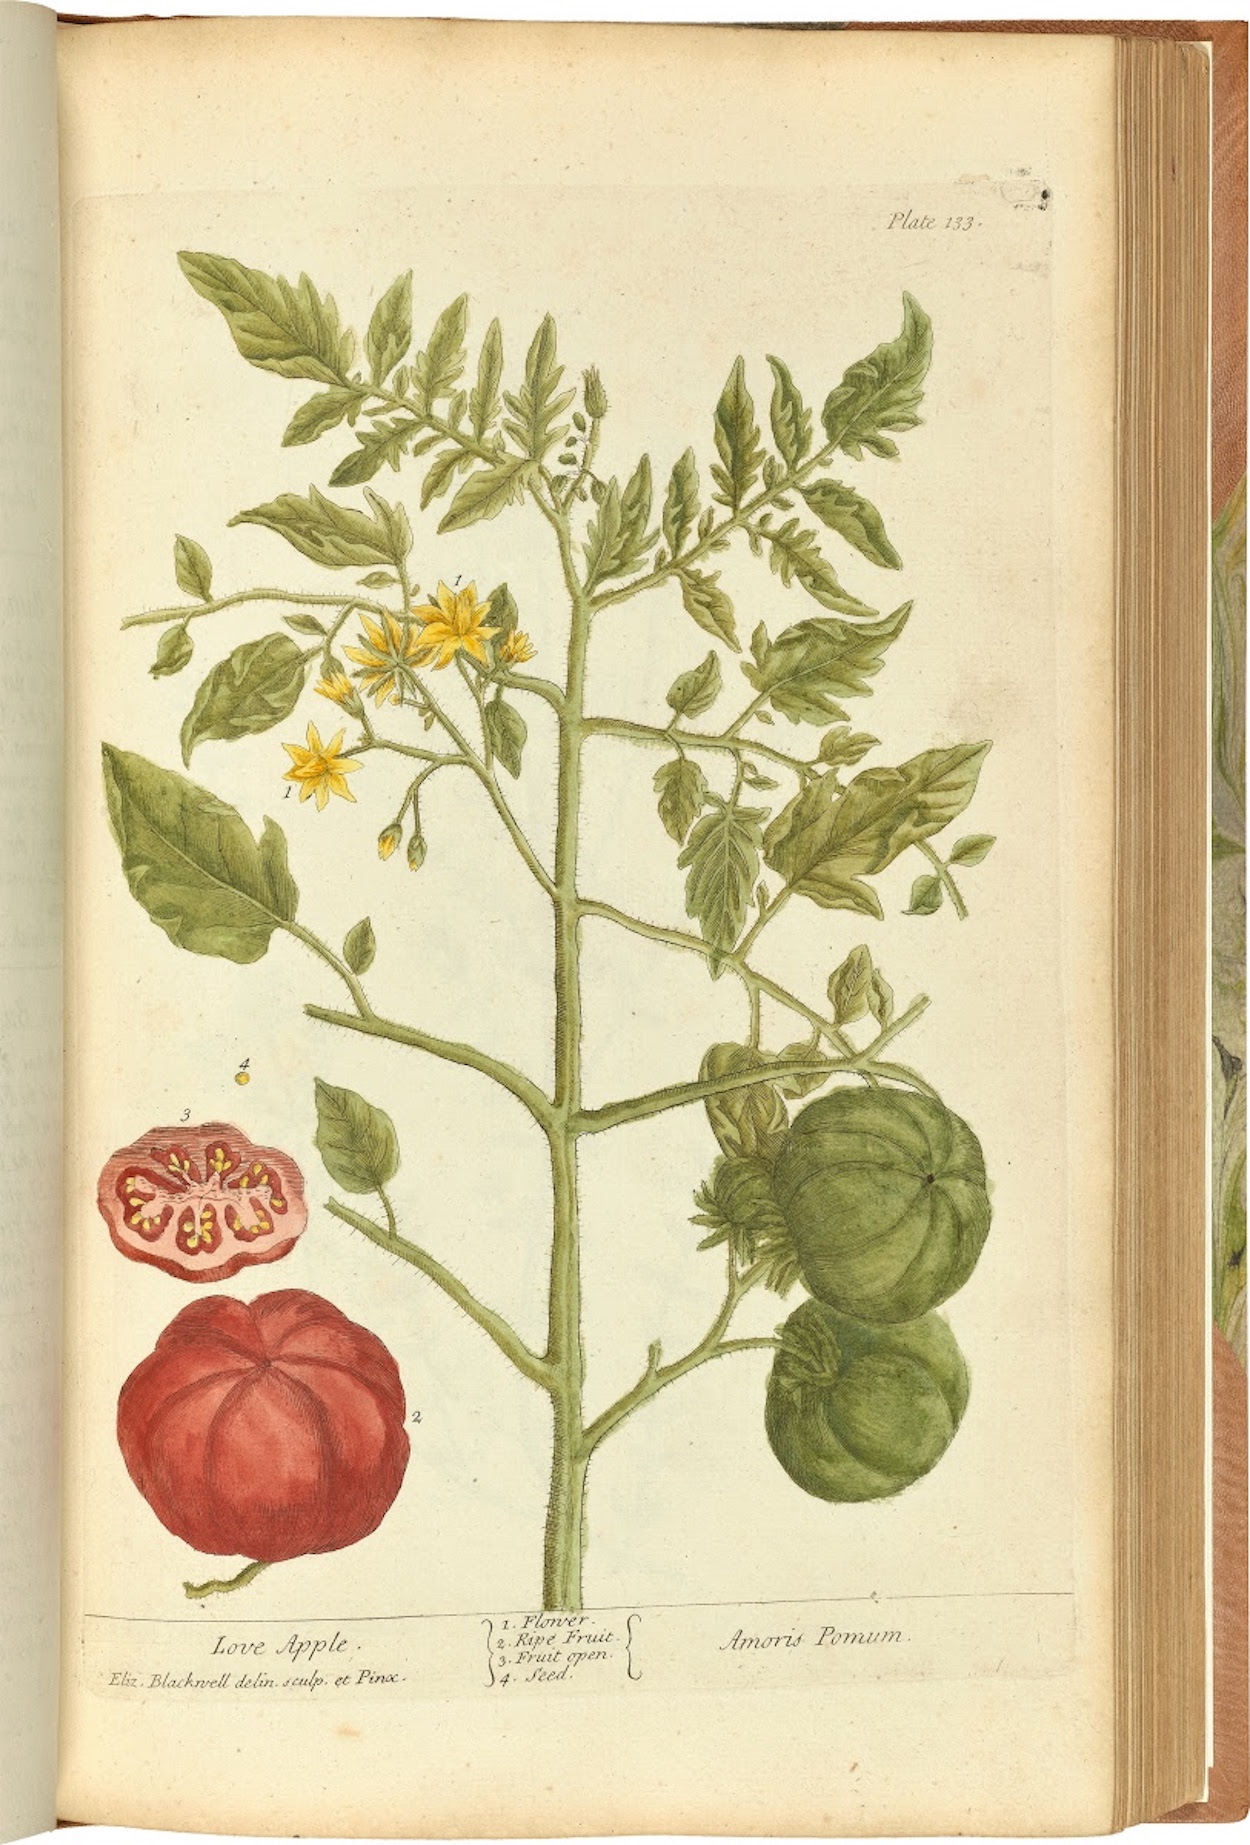 Jablko lásky by Elizabeth Blackwell - 1737/1739 